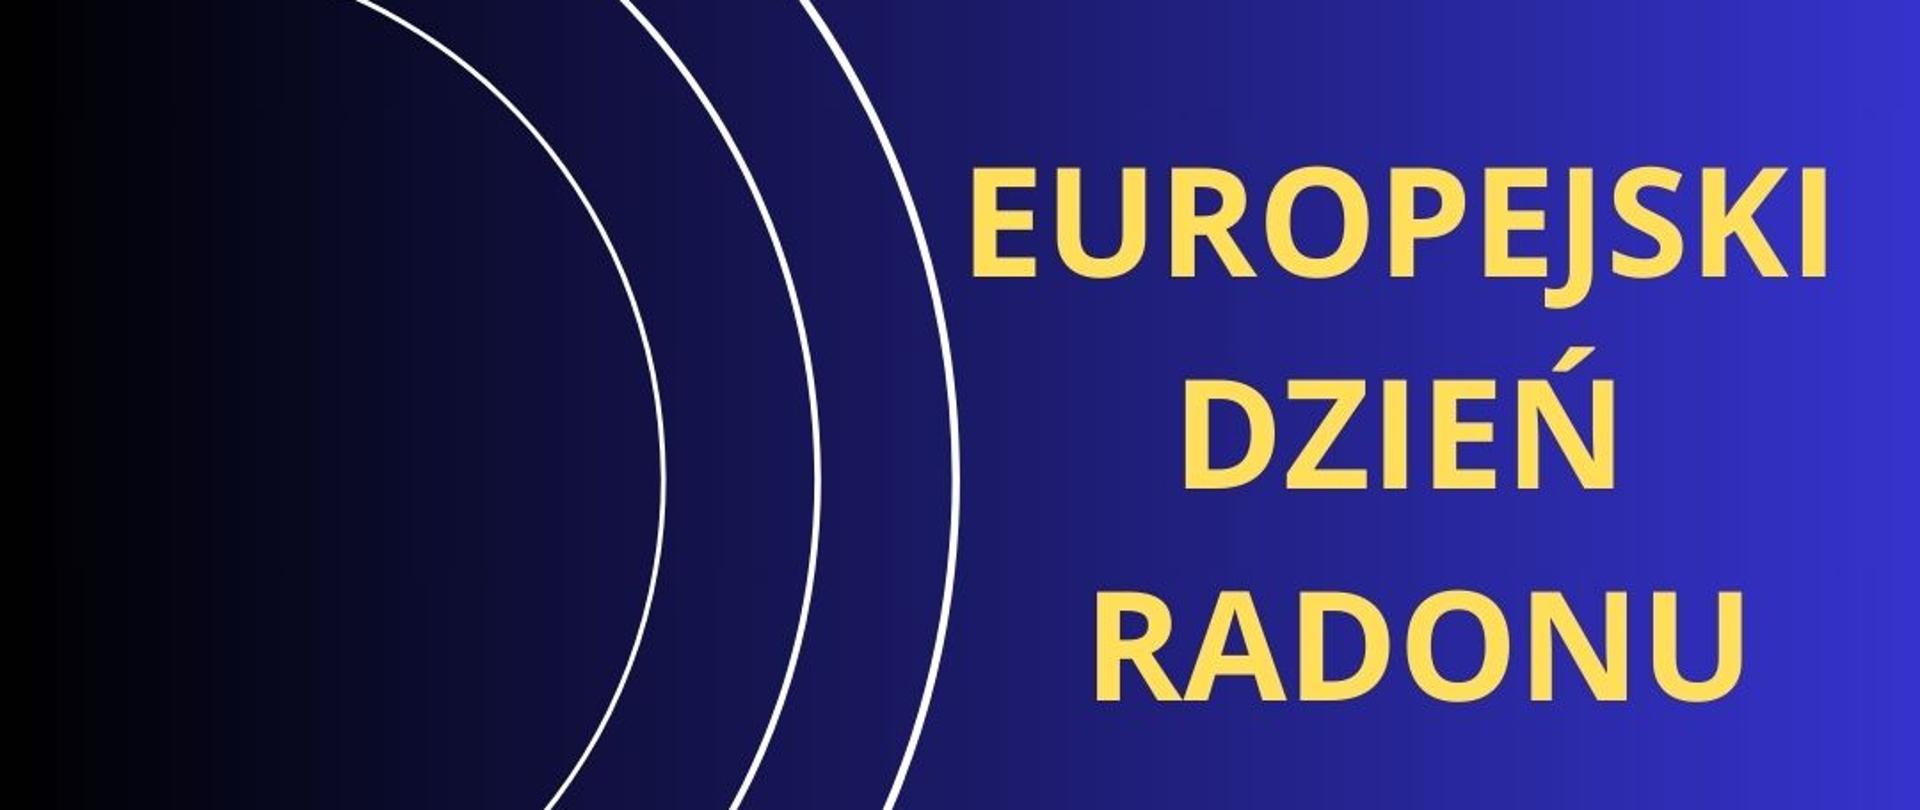 Europejski Dzień Radonu